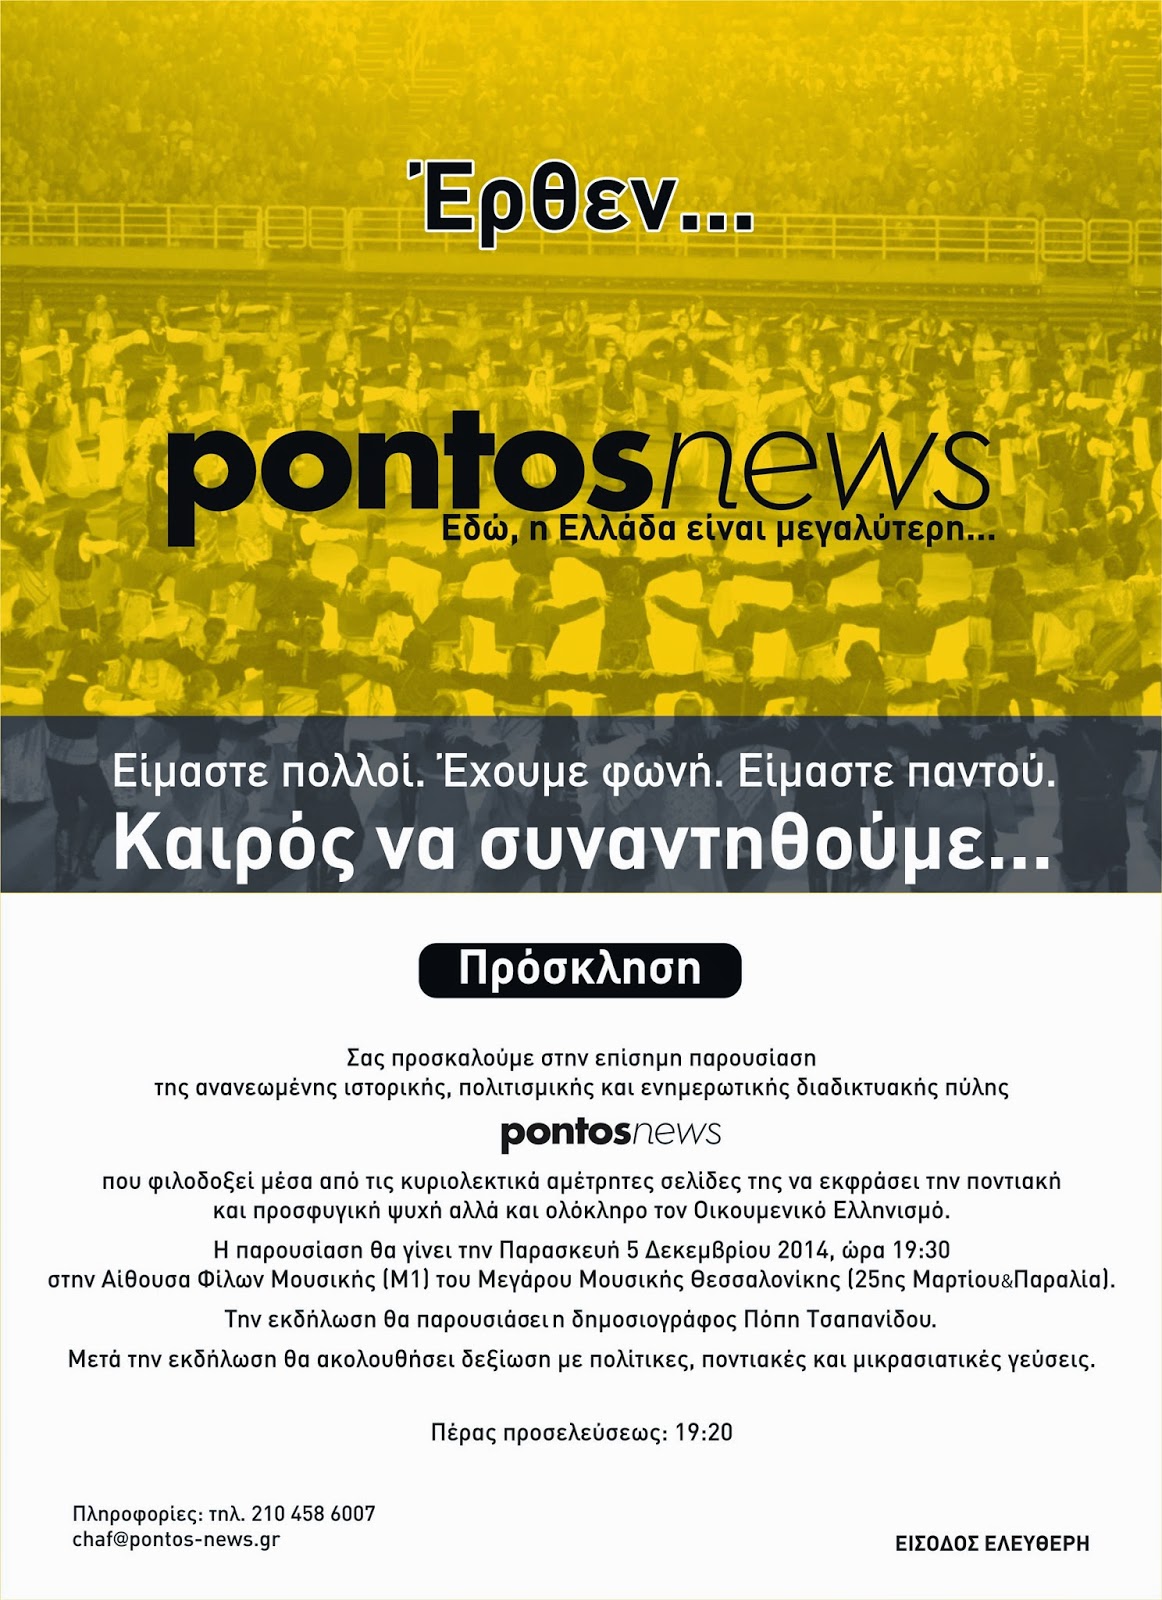 Παρασκευή 5 Δεκεμβρίου η παρουσίαση του pontosnews στη Θεσσαλονίκη - Φωτογραφία 1